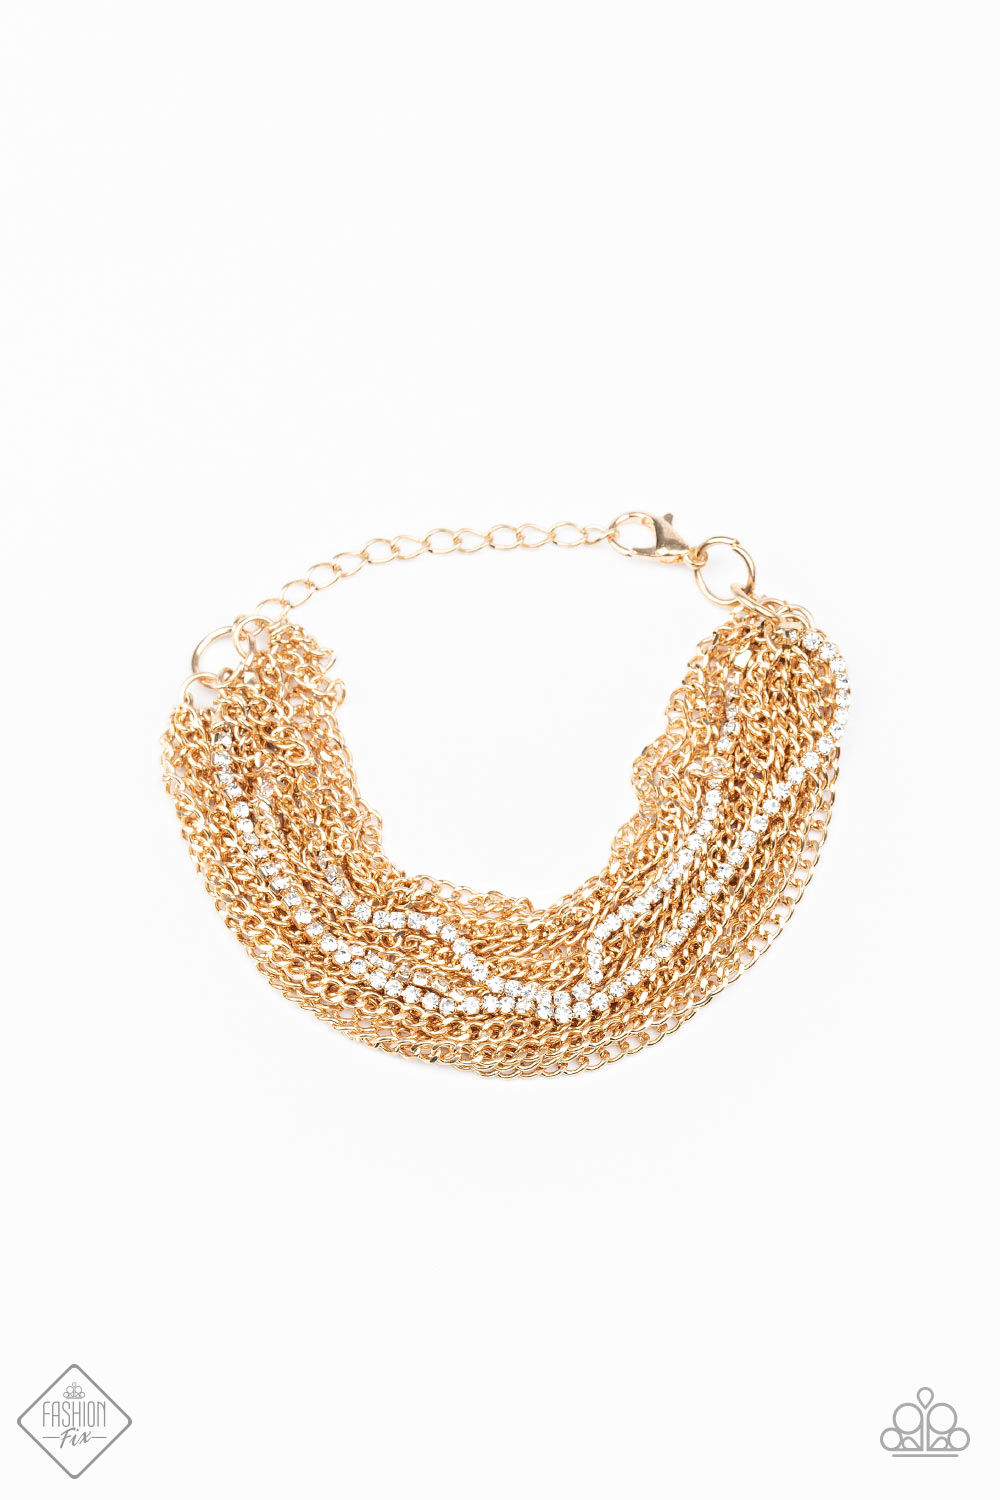 Paparazzi Accessories Pour Me Another - Gold Bracelets - Lady T Accessories